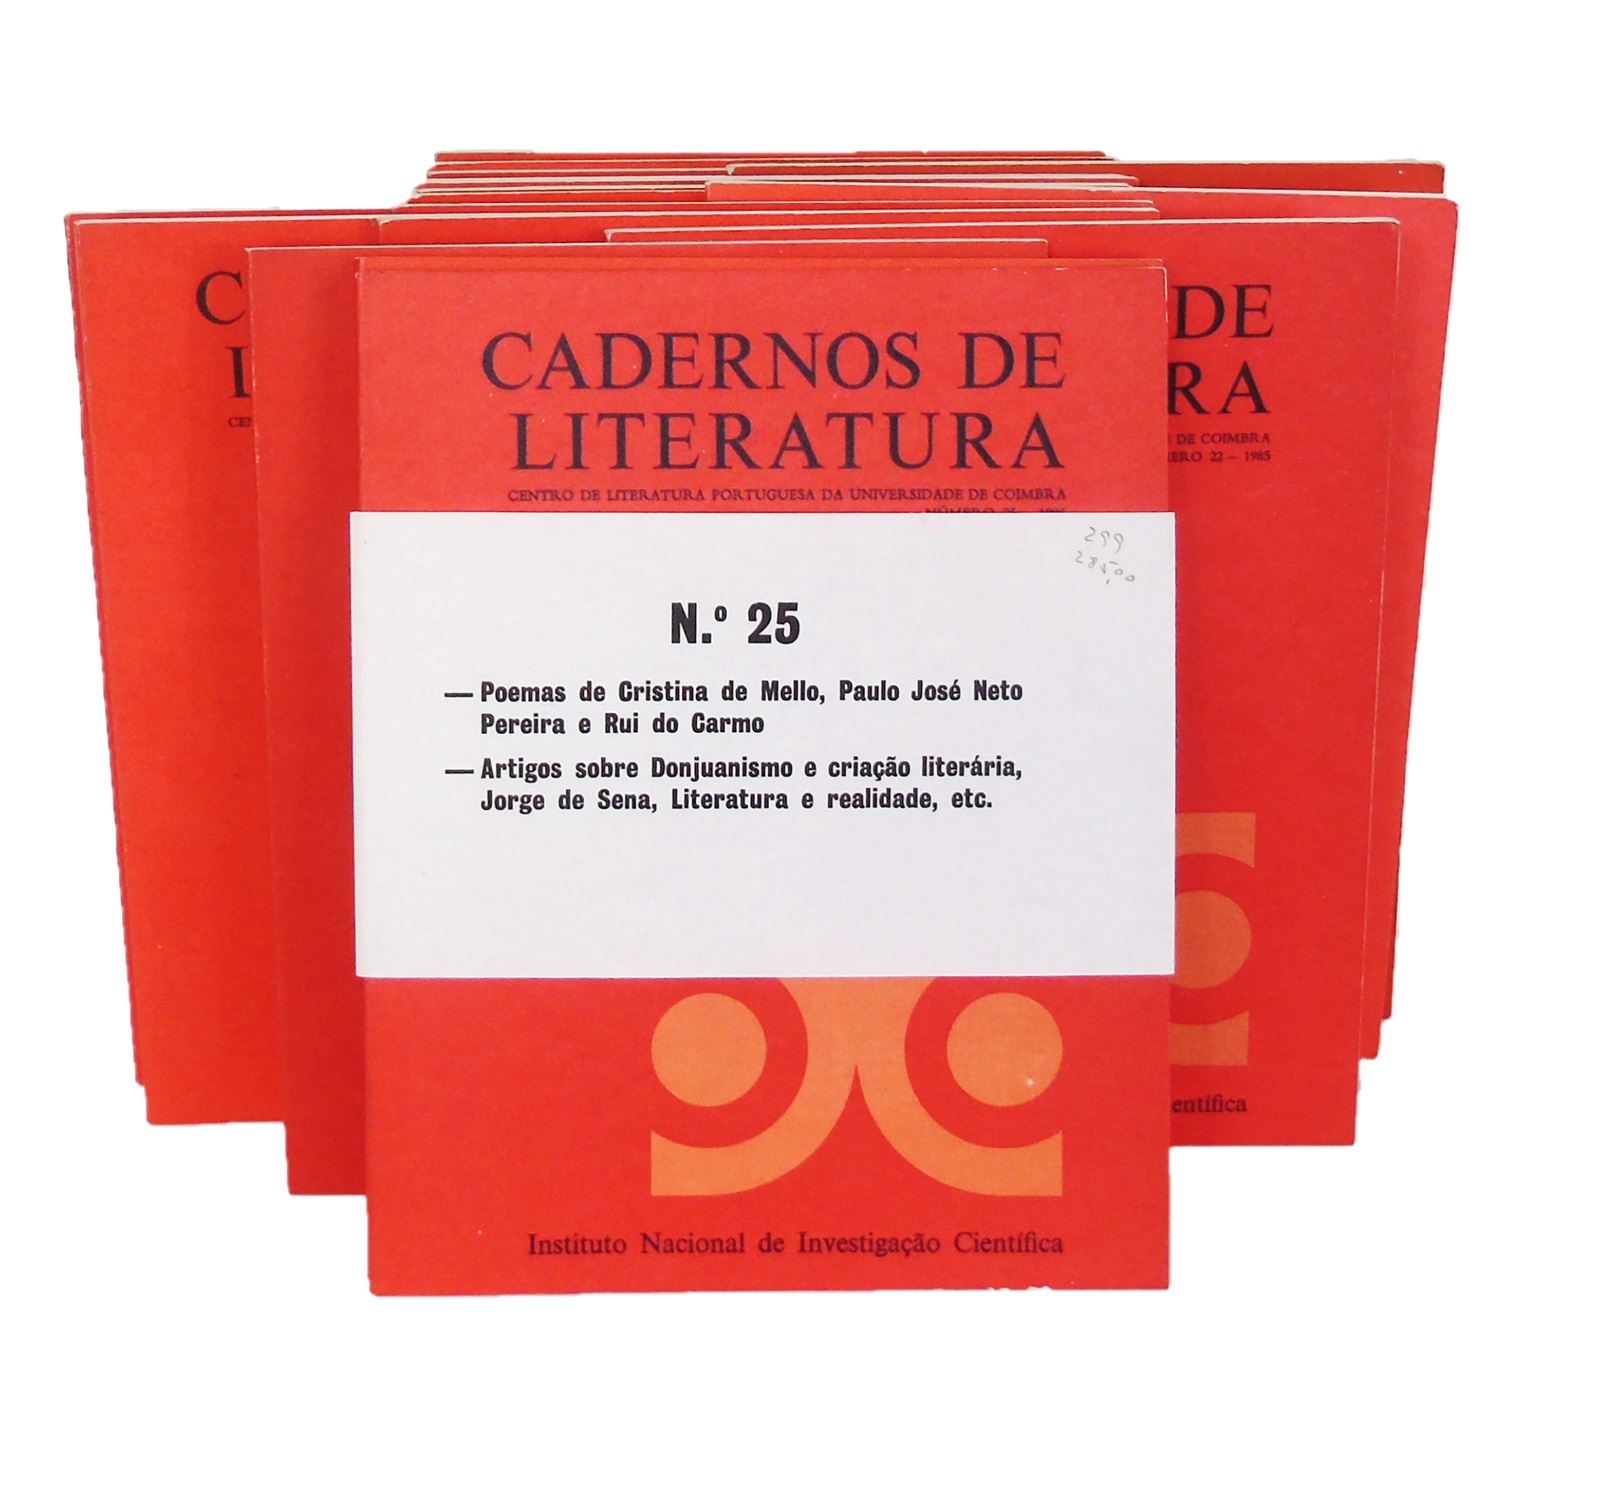 CADERNOS DE LITERATURA. 25 vols.